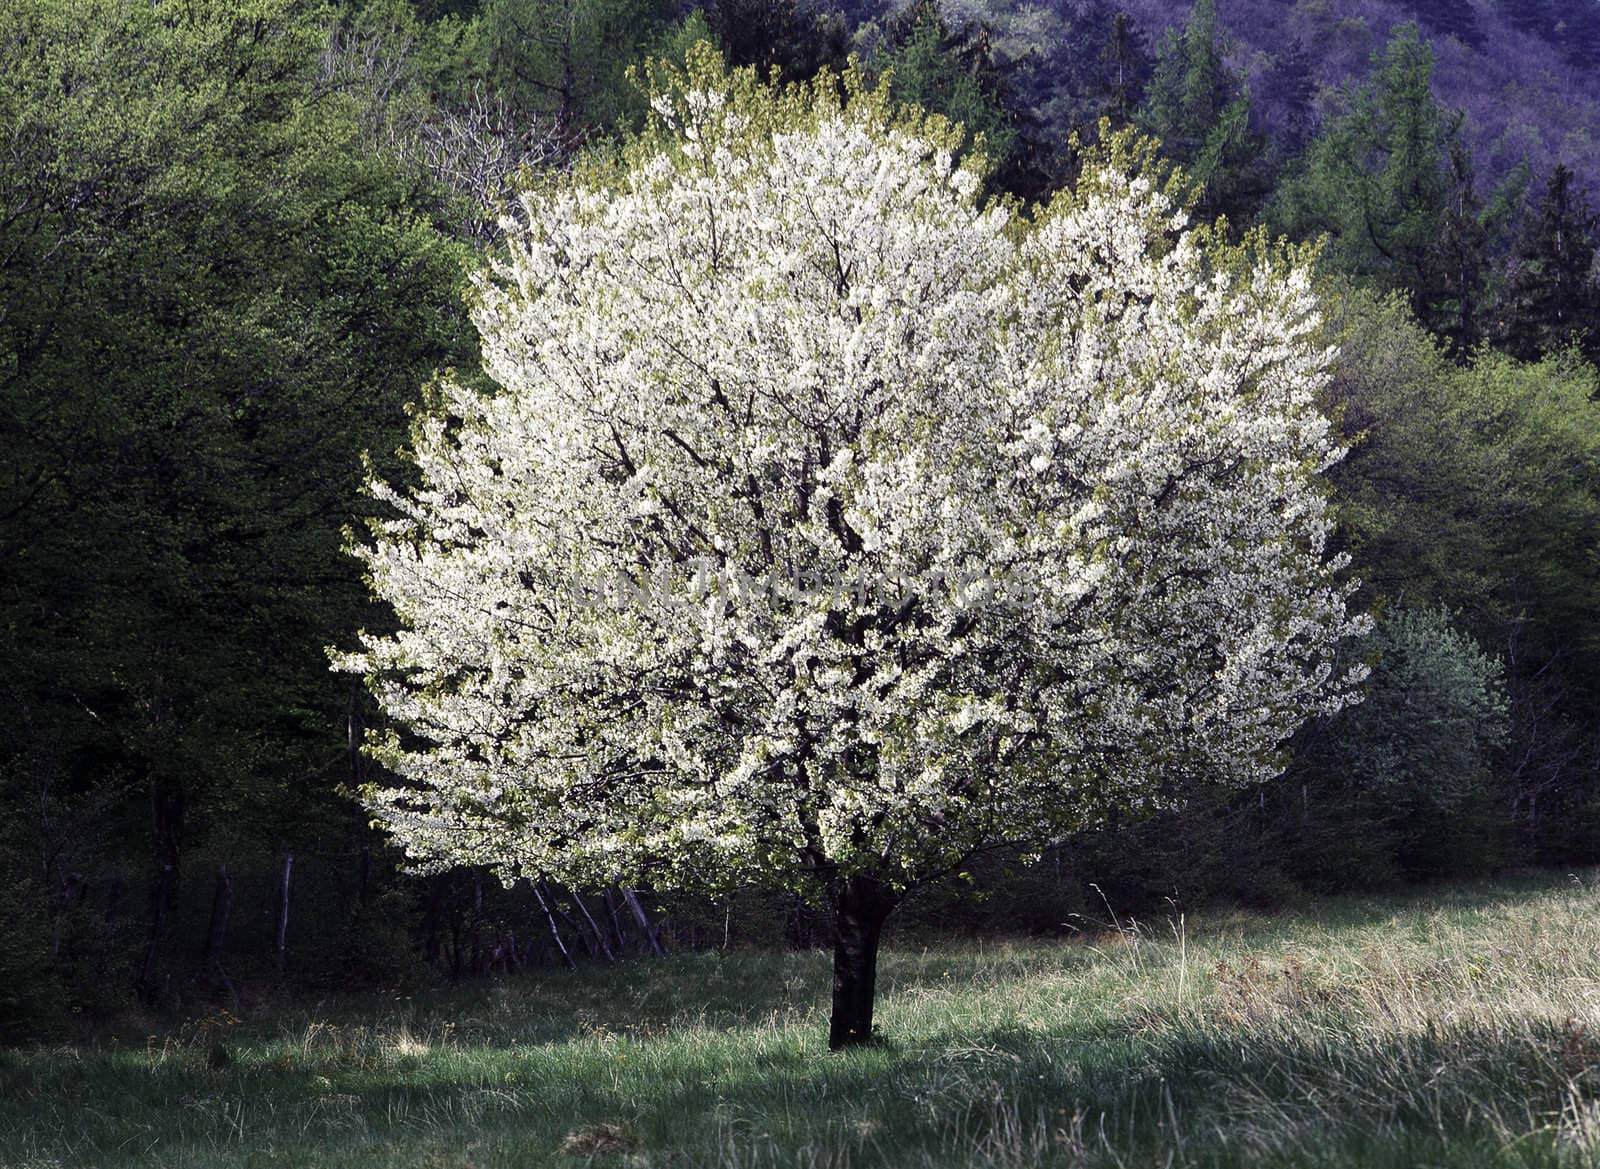 Tree blooming in Spring